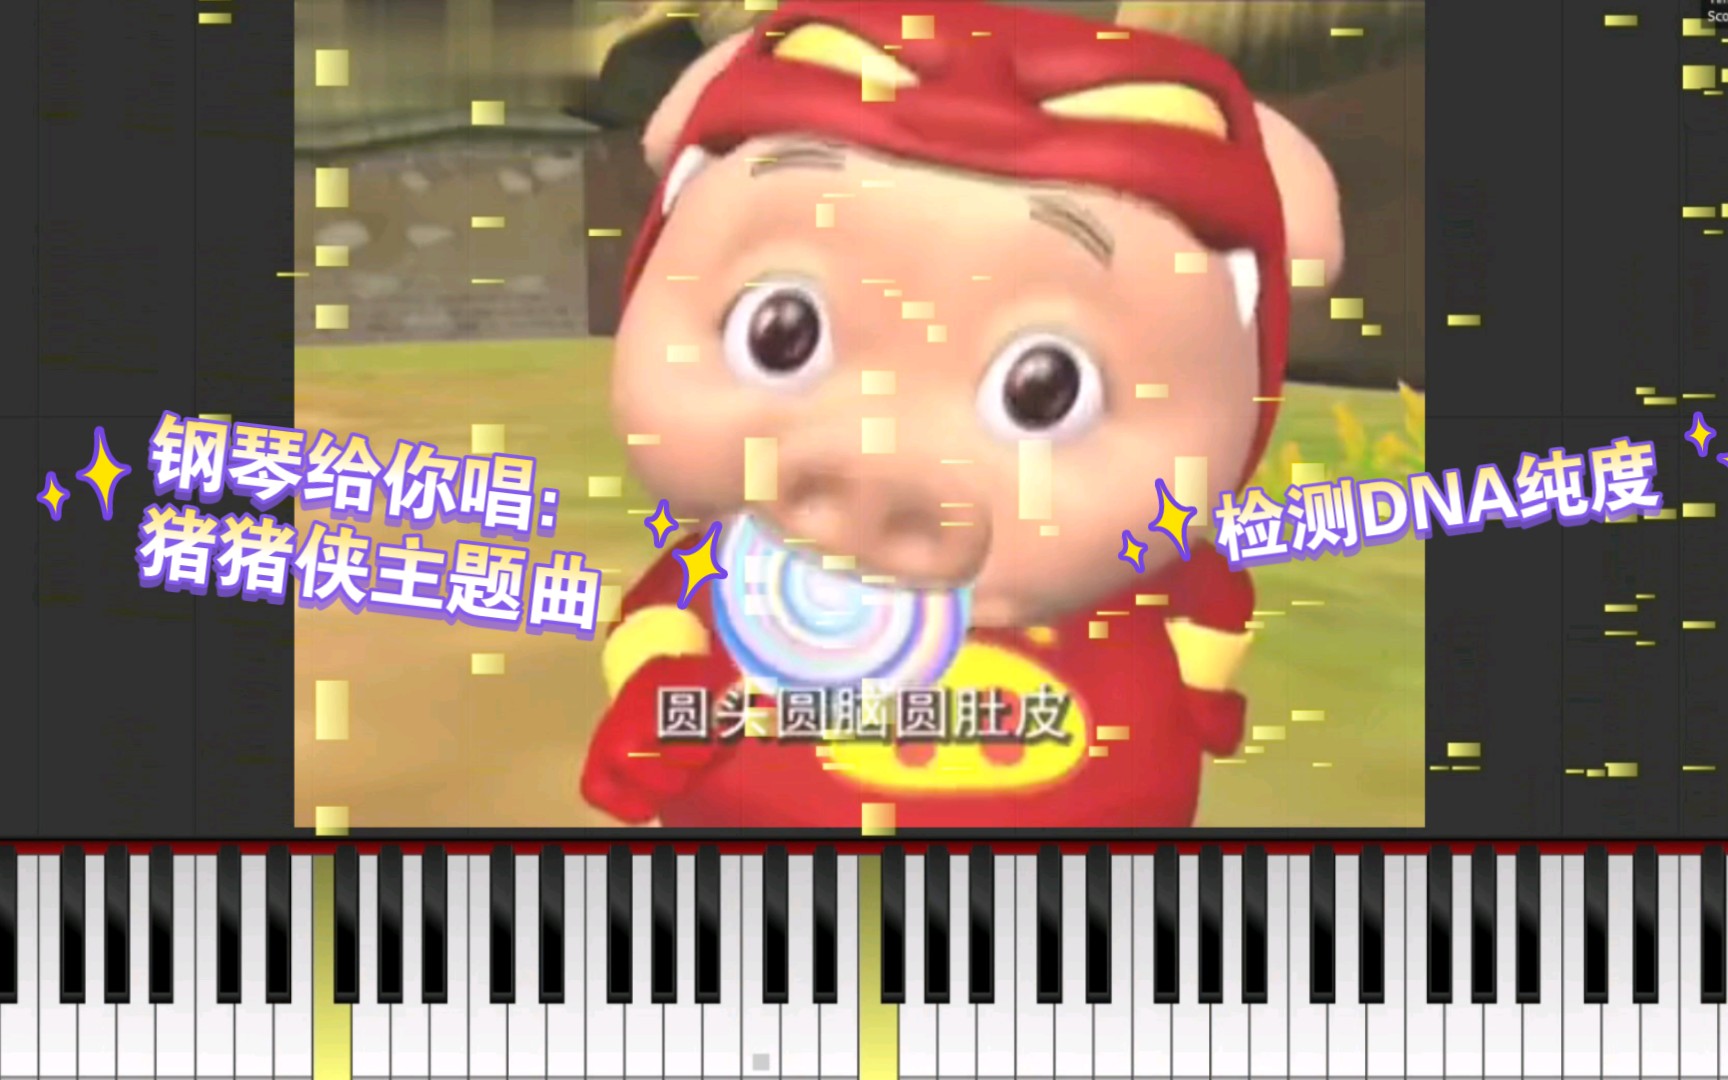 钢琴给你唱:猪猪侠主题曲